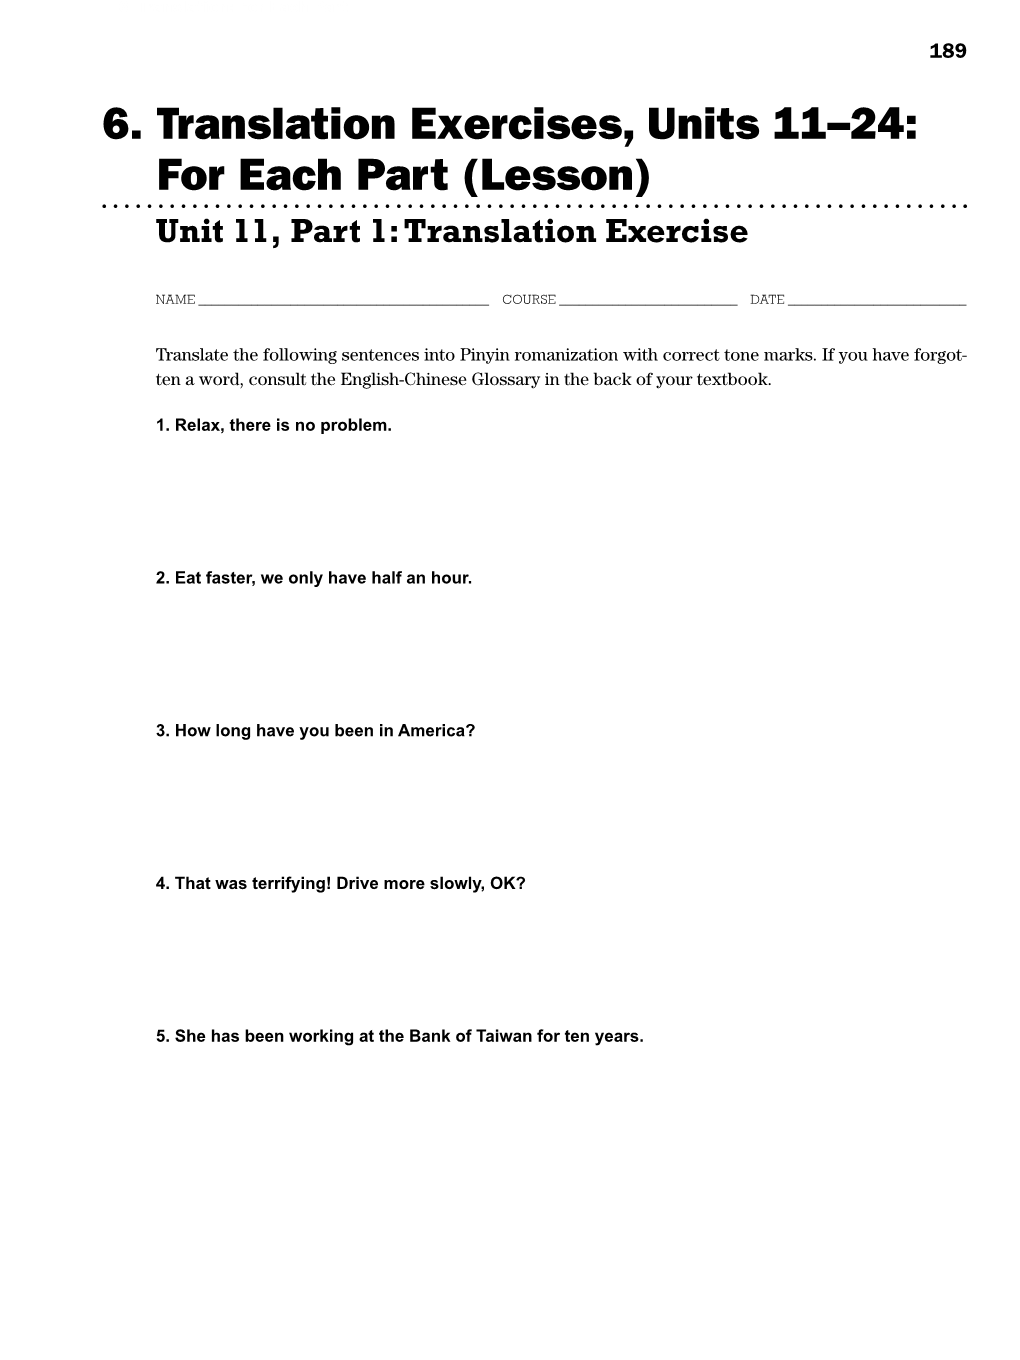 6-Translation Exercises Unit11-15